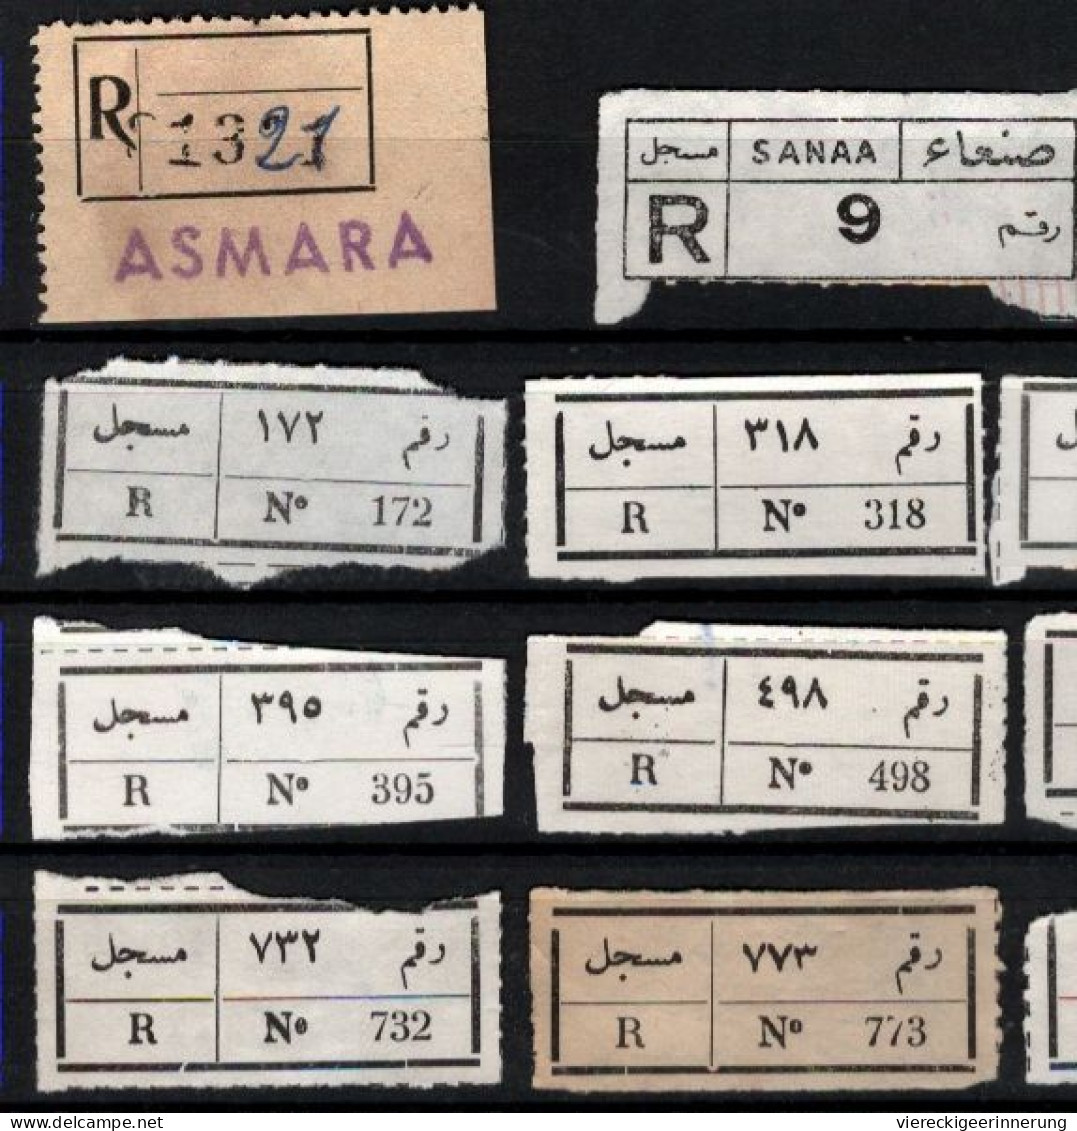 ! 1 Steckkarte Mit 14 R-Zetteln Aus Jemen, Yemen ?, Asmara, Sanaa, Einschreibzettel, Reco Label - Yemen